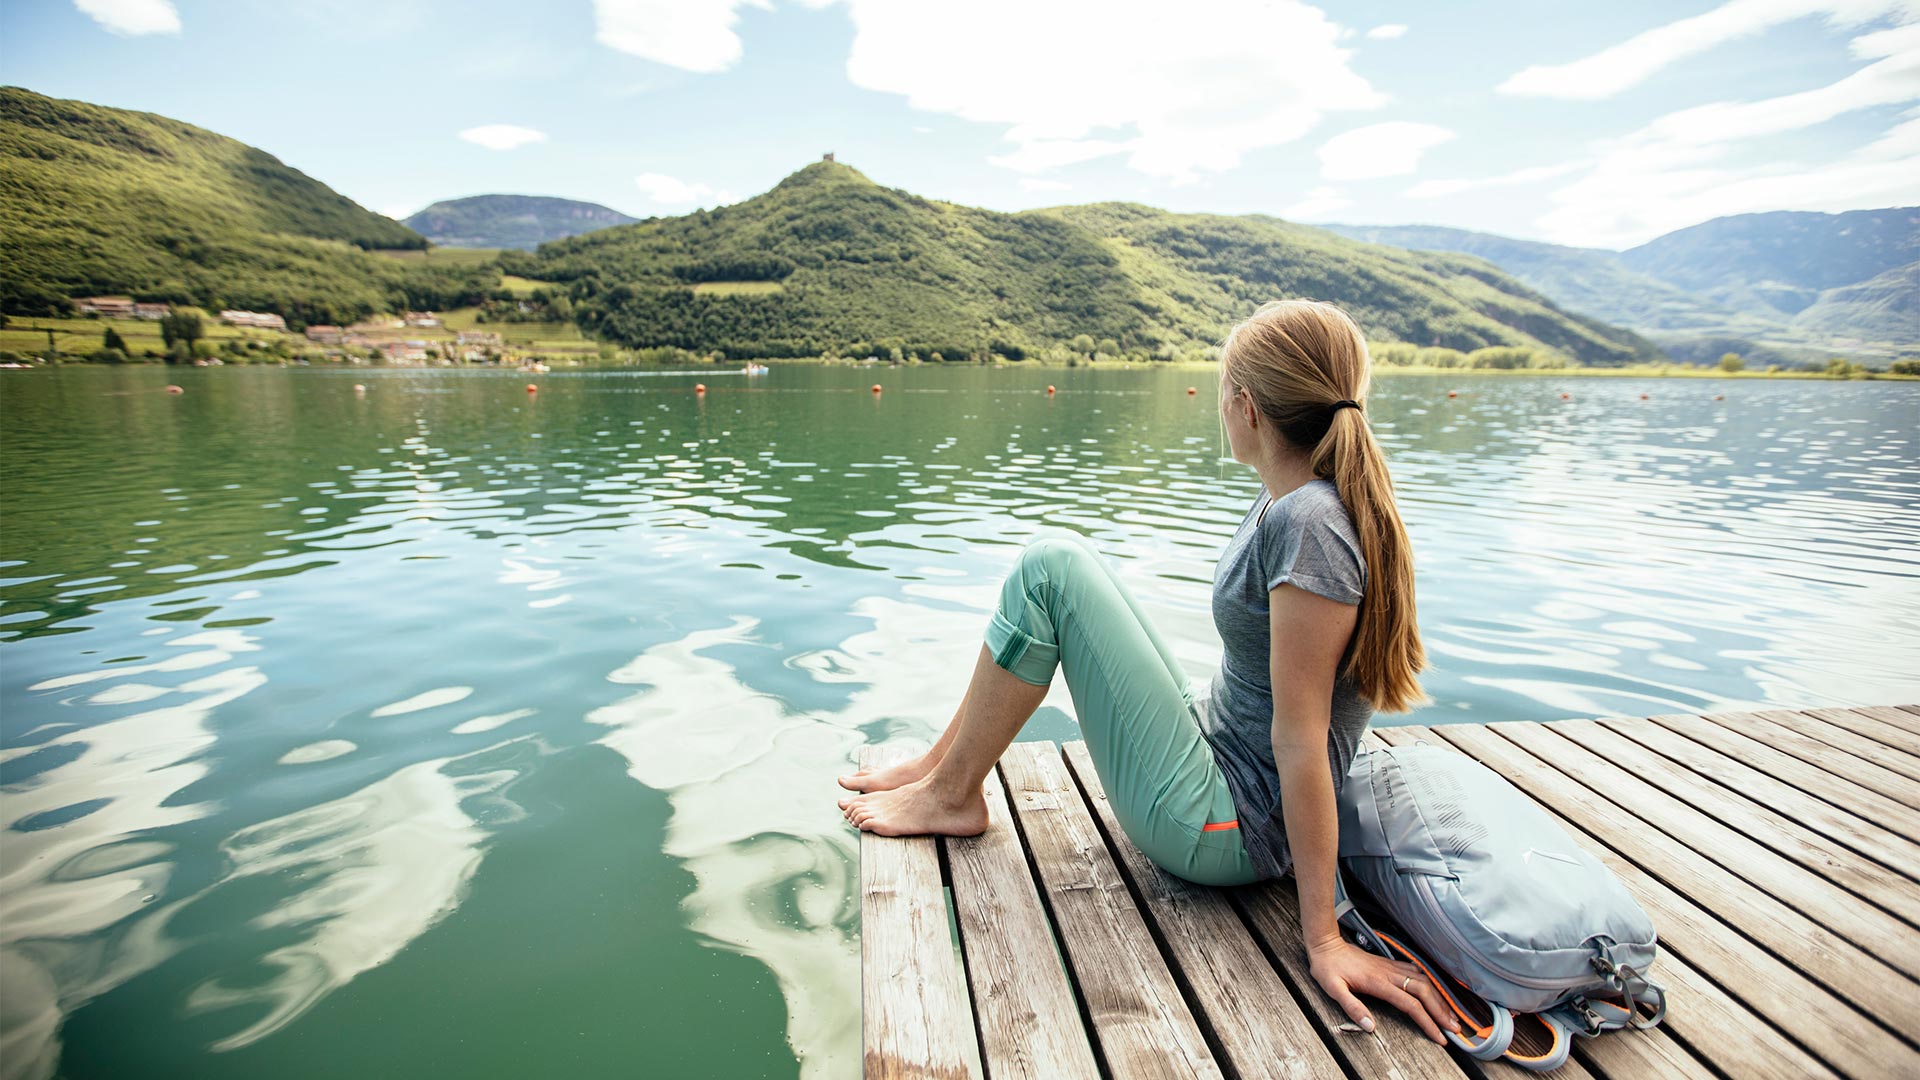 Una ragazza seduta sul molo del Lago di Caldaro osserva il paese dall'altra parte del lago e le barche che passano.